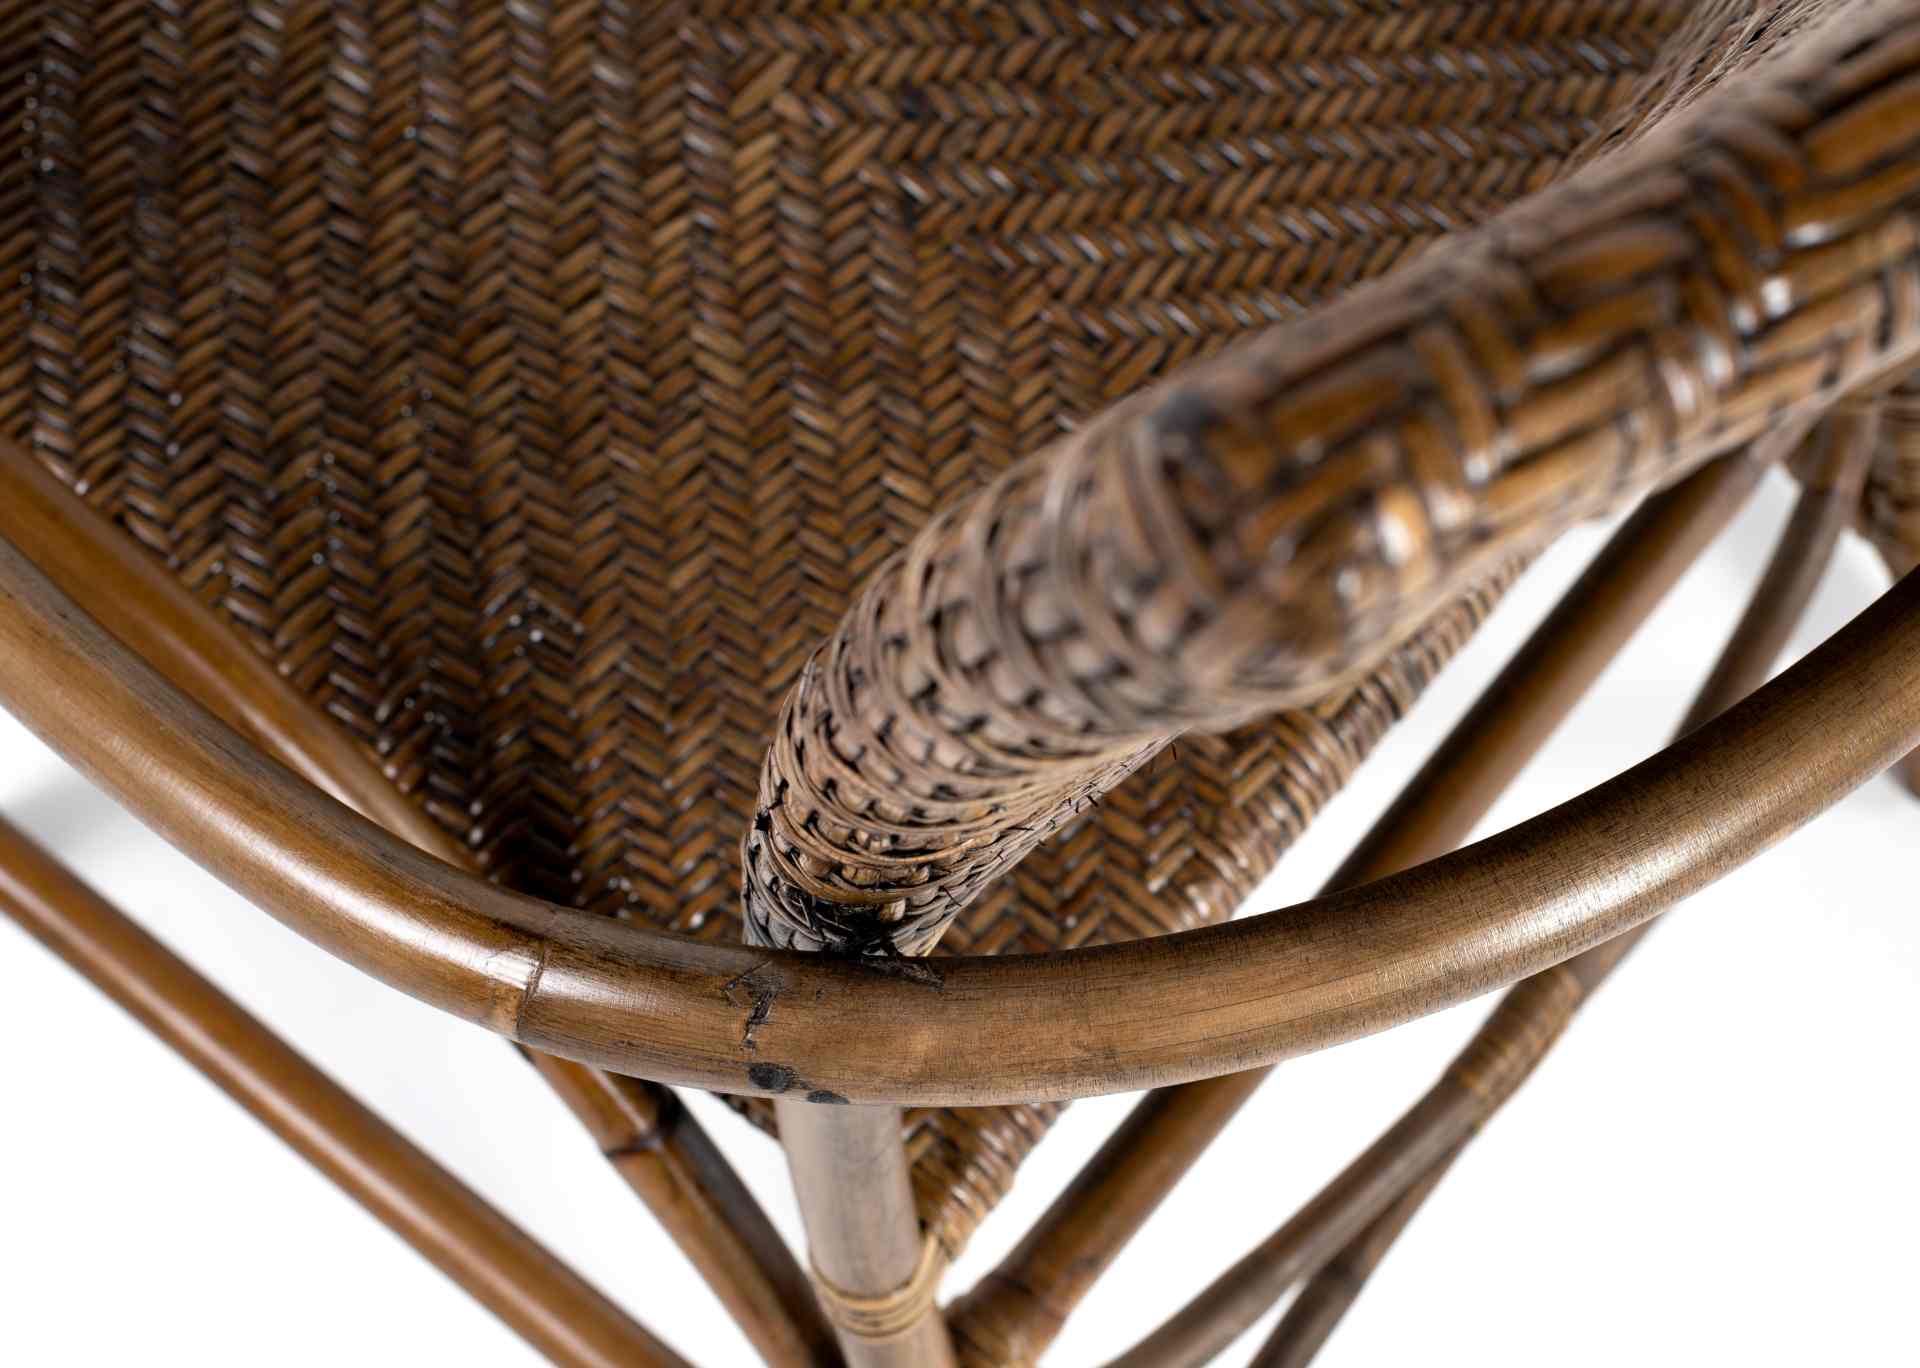 Der Armlehnstuhl Jester überzeugt mit seinem Landhaus Stil. Gefertigt wurde er aus Rattan, welches einen braunen Farbton besitzt. Der Stuhl verfügt über eine Armlehne und ist im 2er-Set erhältlich. Die Sitzhöhe beträgt beträgt 46 cm.